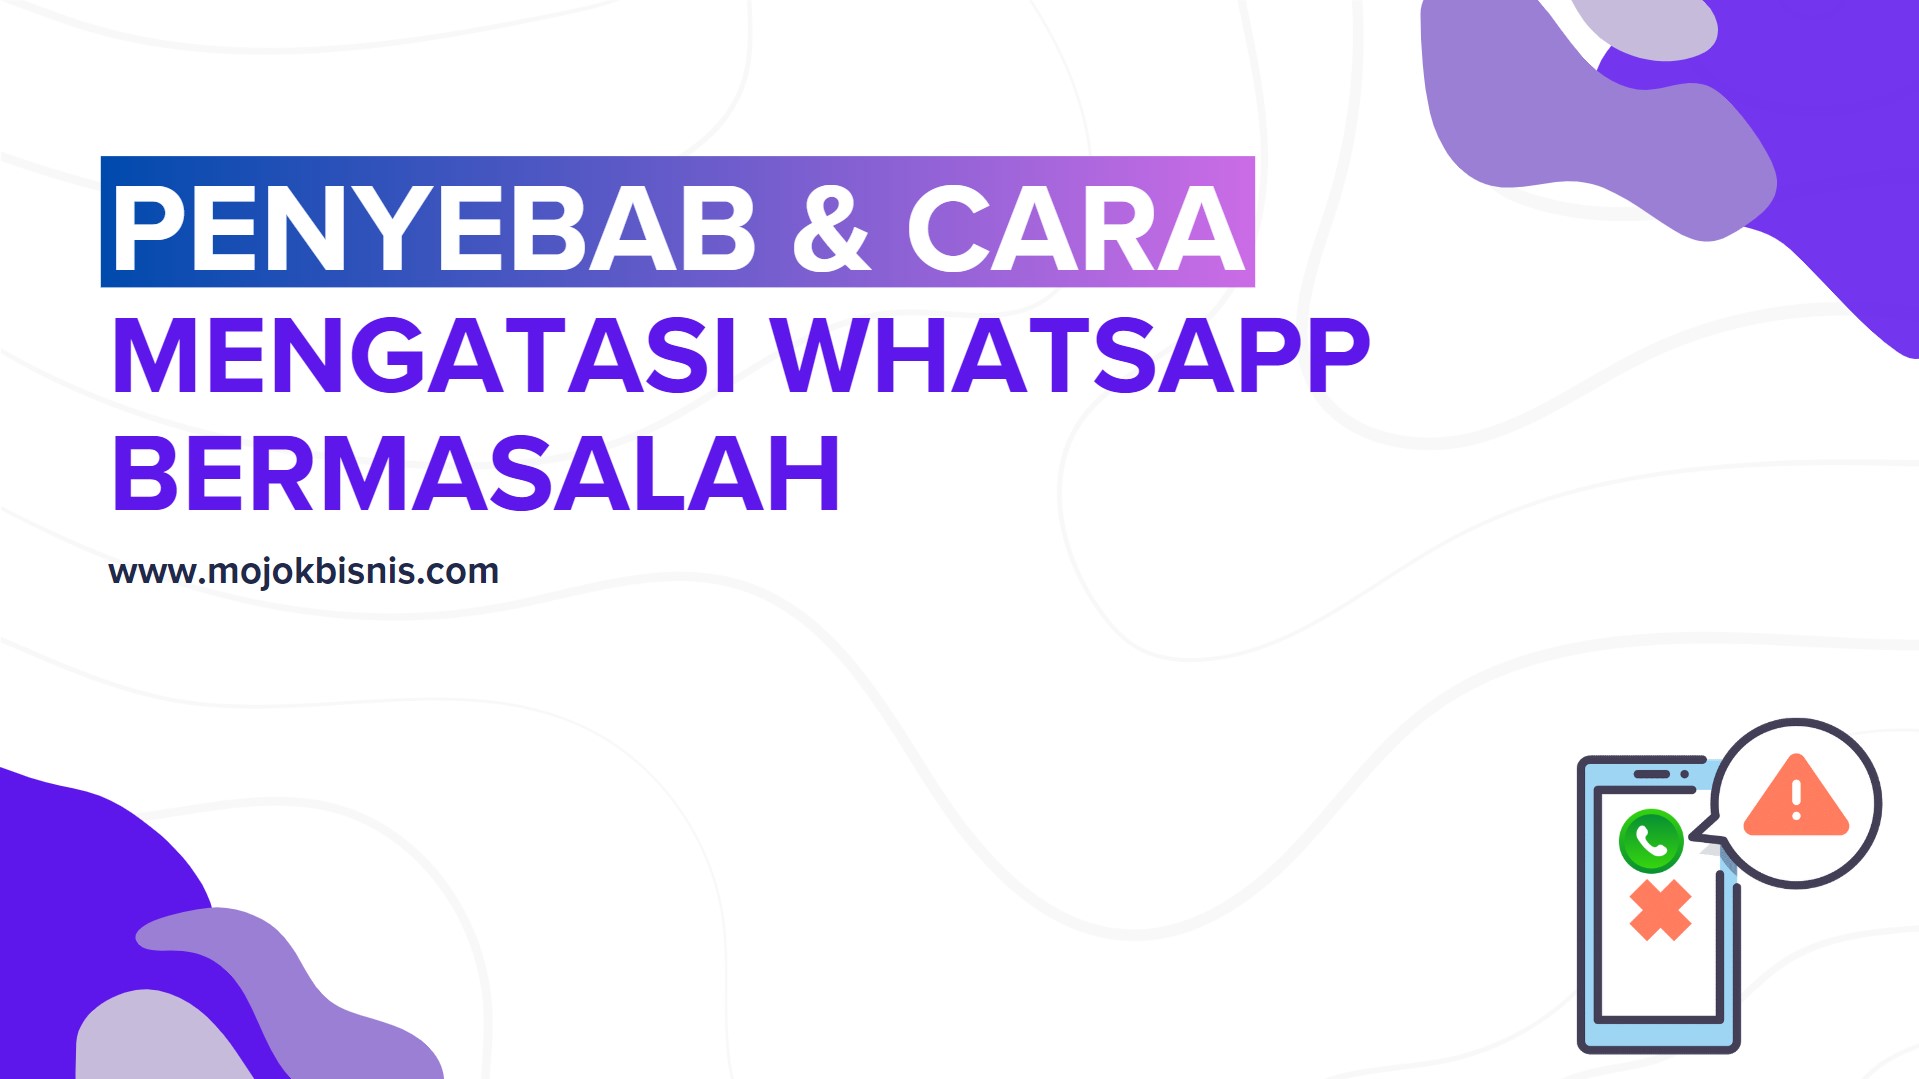 Penyebab & Cara Mengatasi WhatsApp Bermasalah!